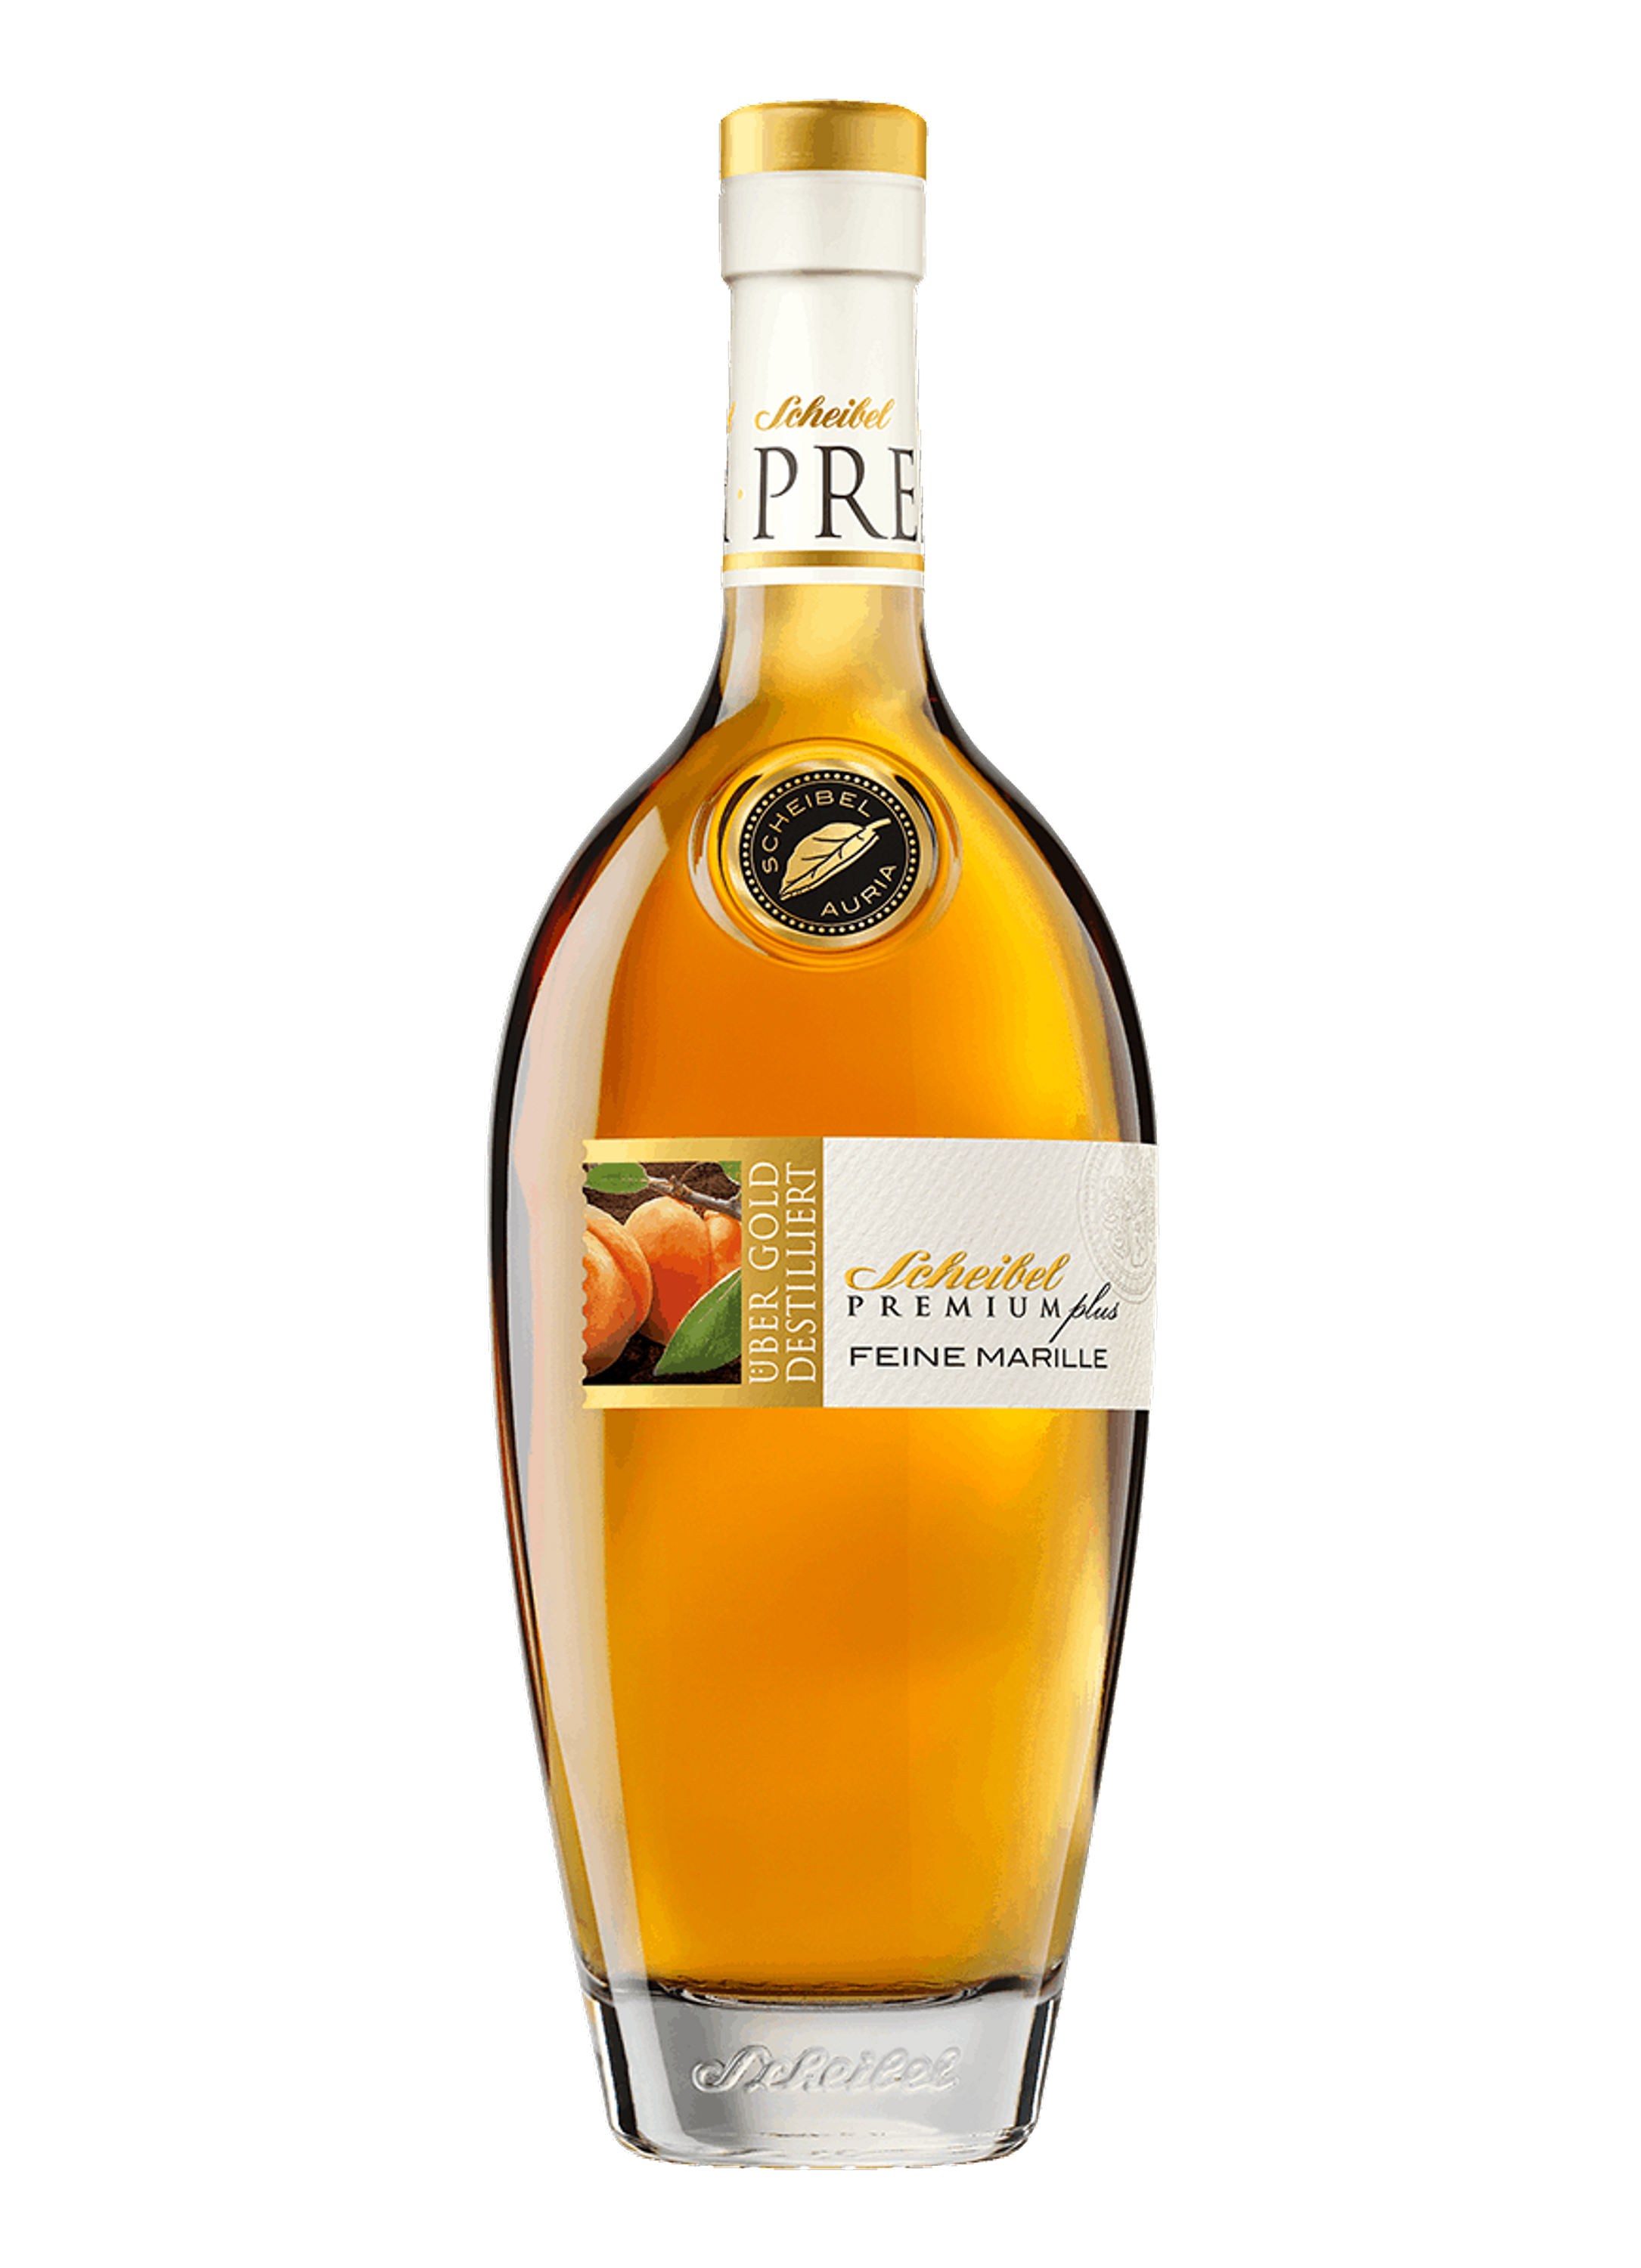 Scheibel Fine Apricot Premium Plus 0.7l, alc. 40% by volume